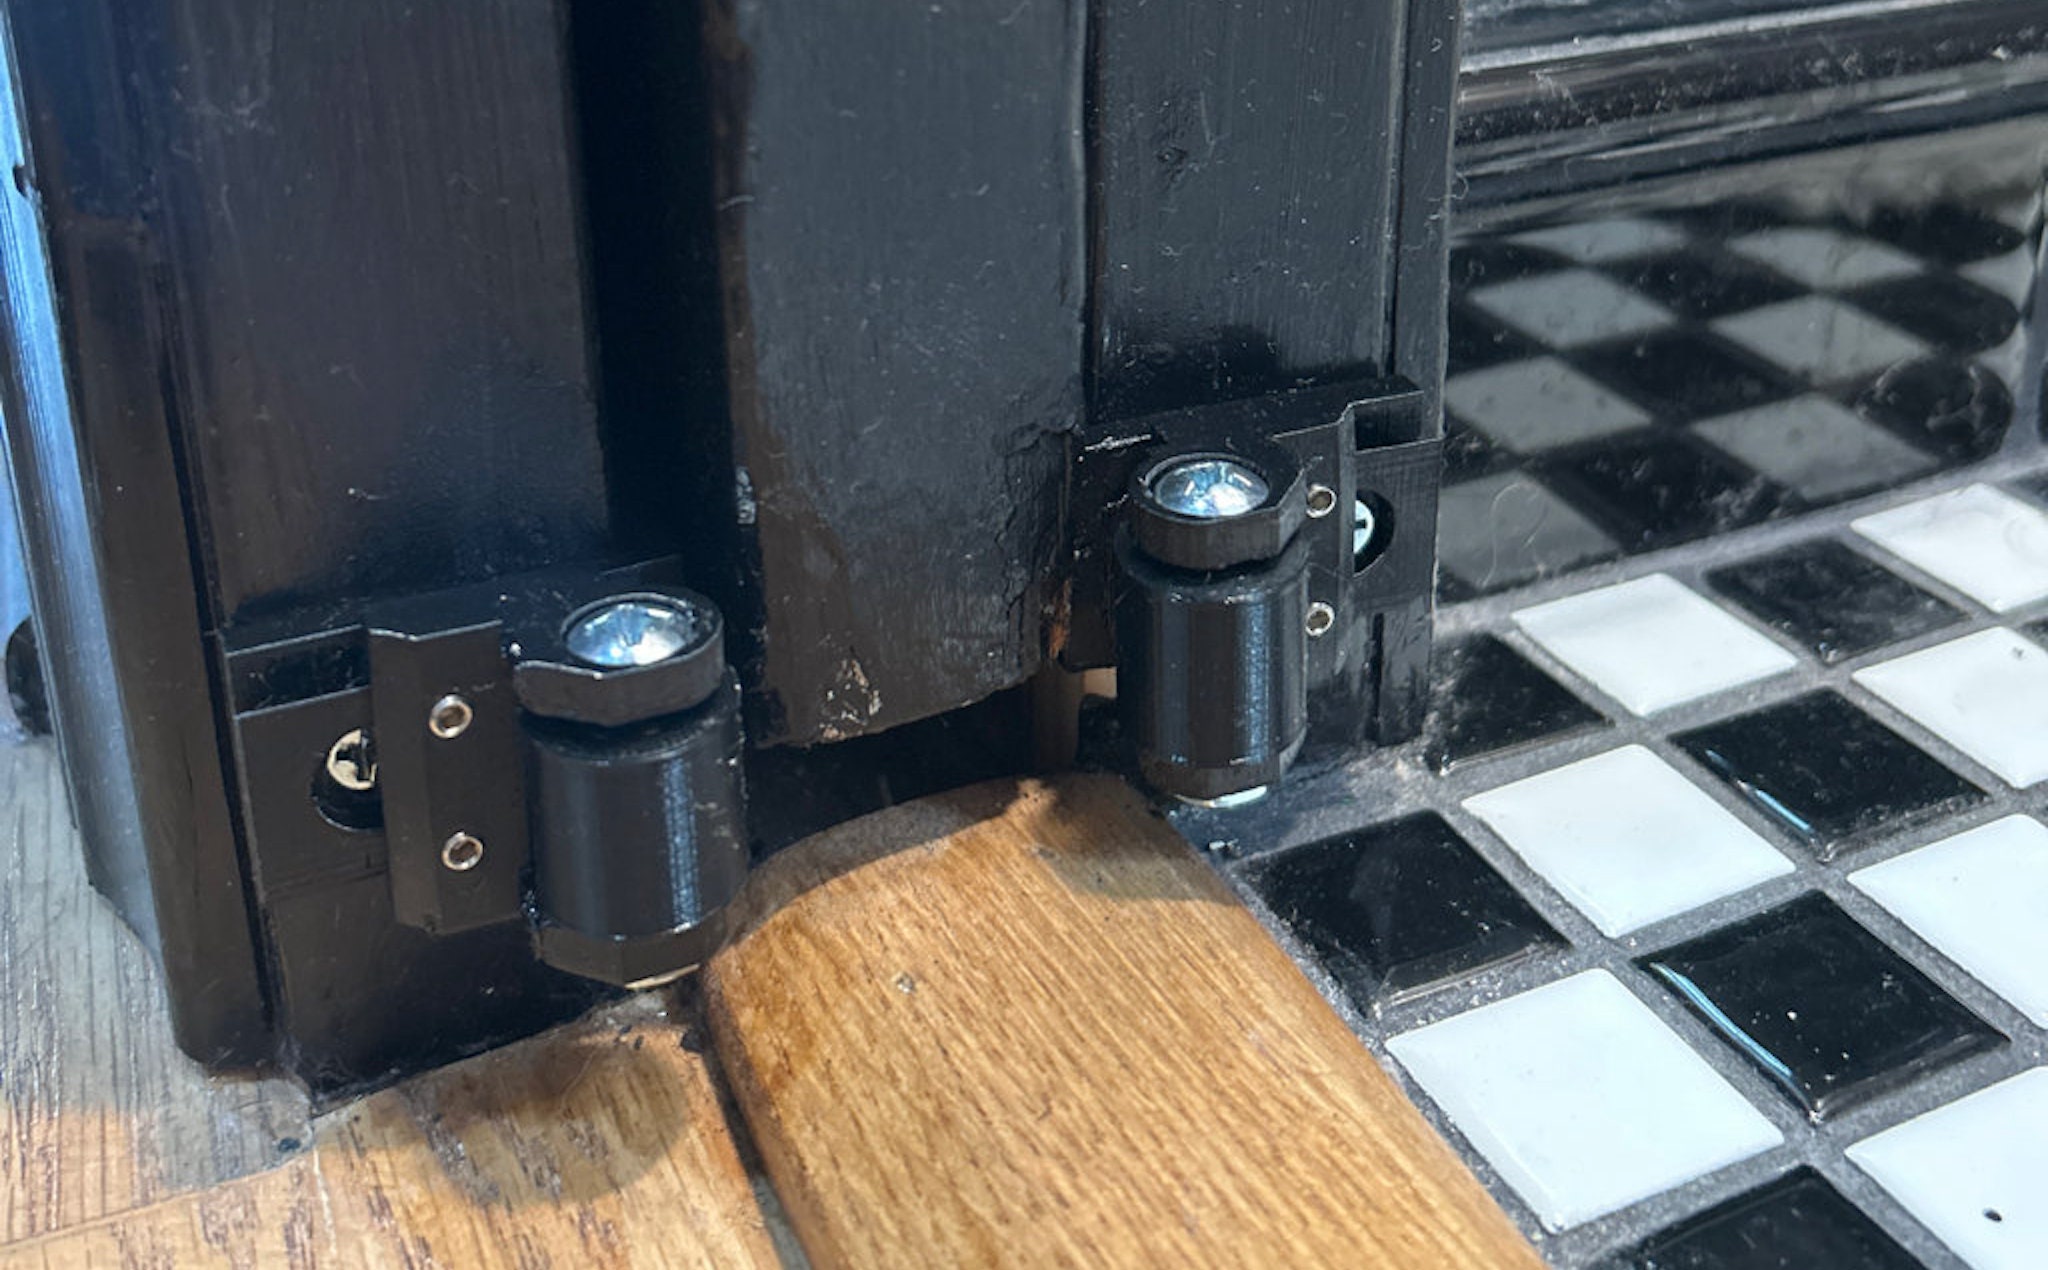 How to Calibrate Adjustable Hinges - Great Northern Door